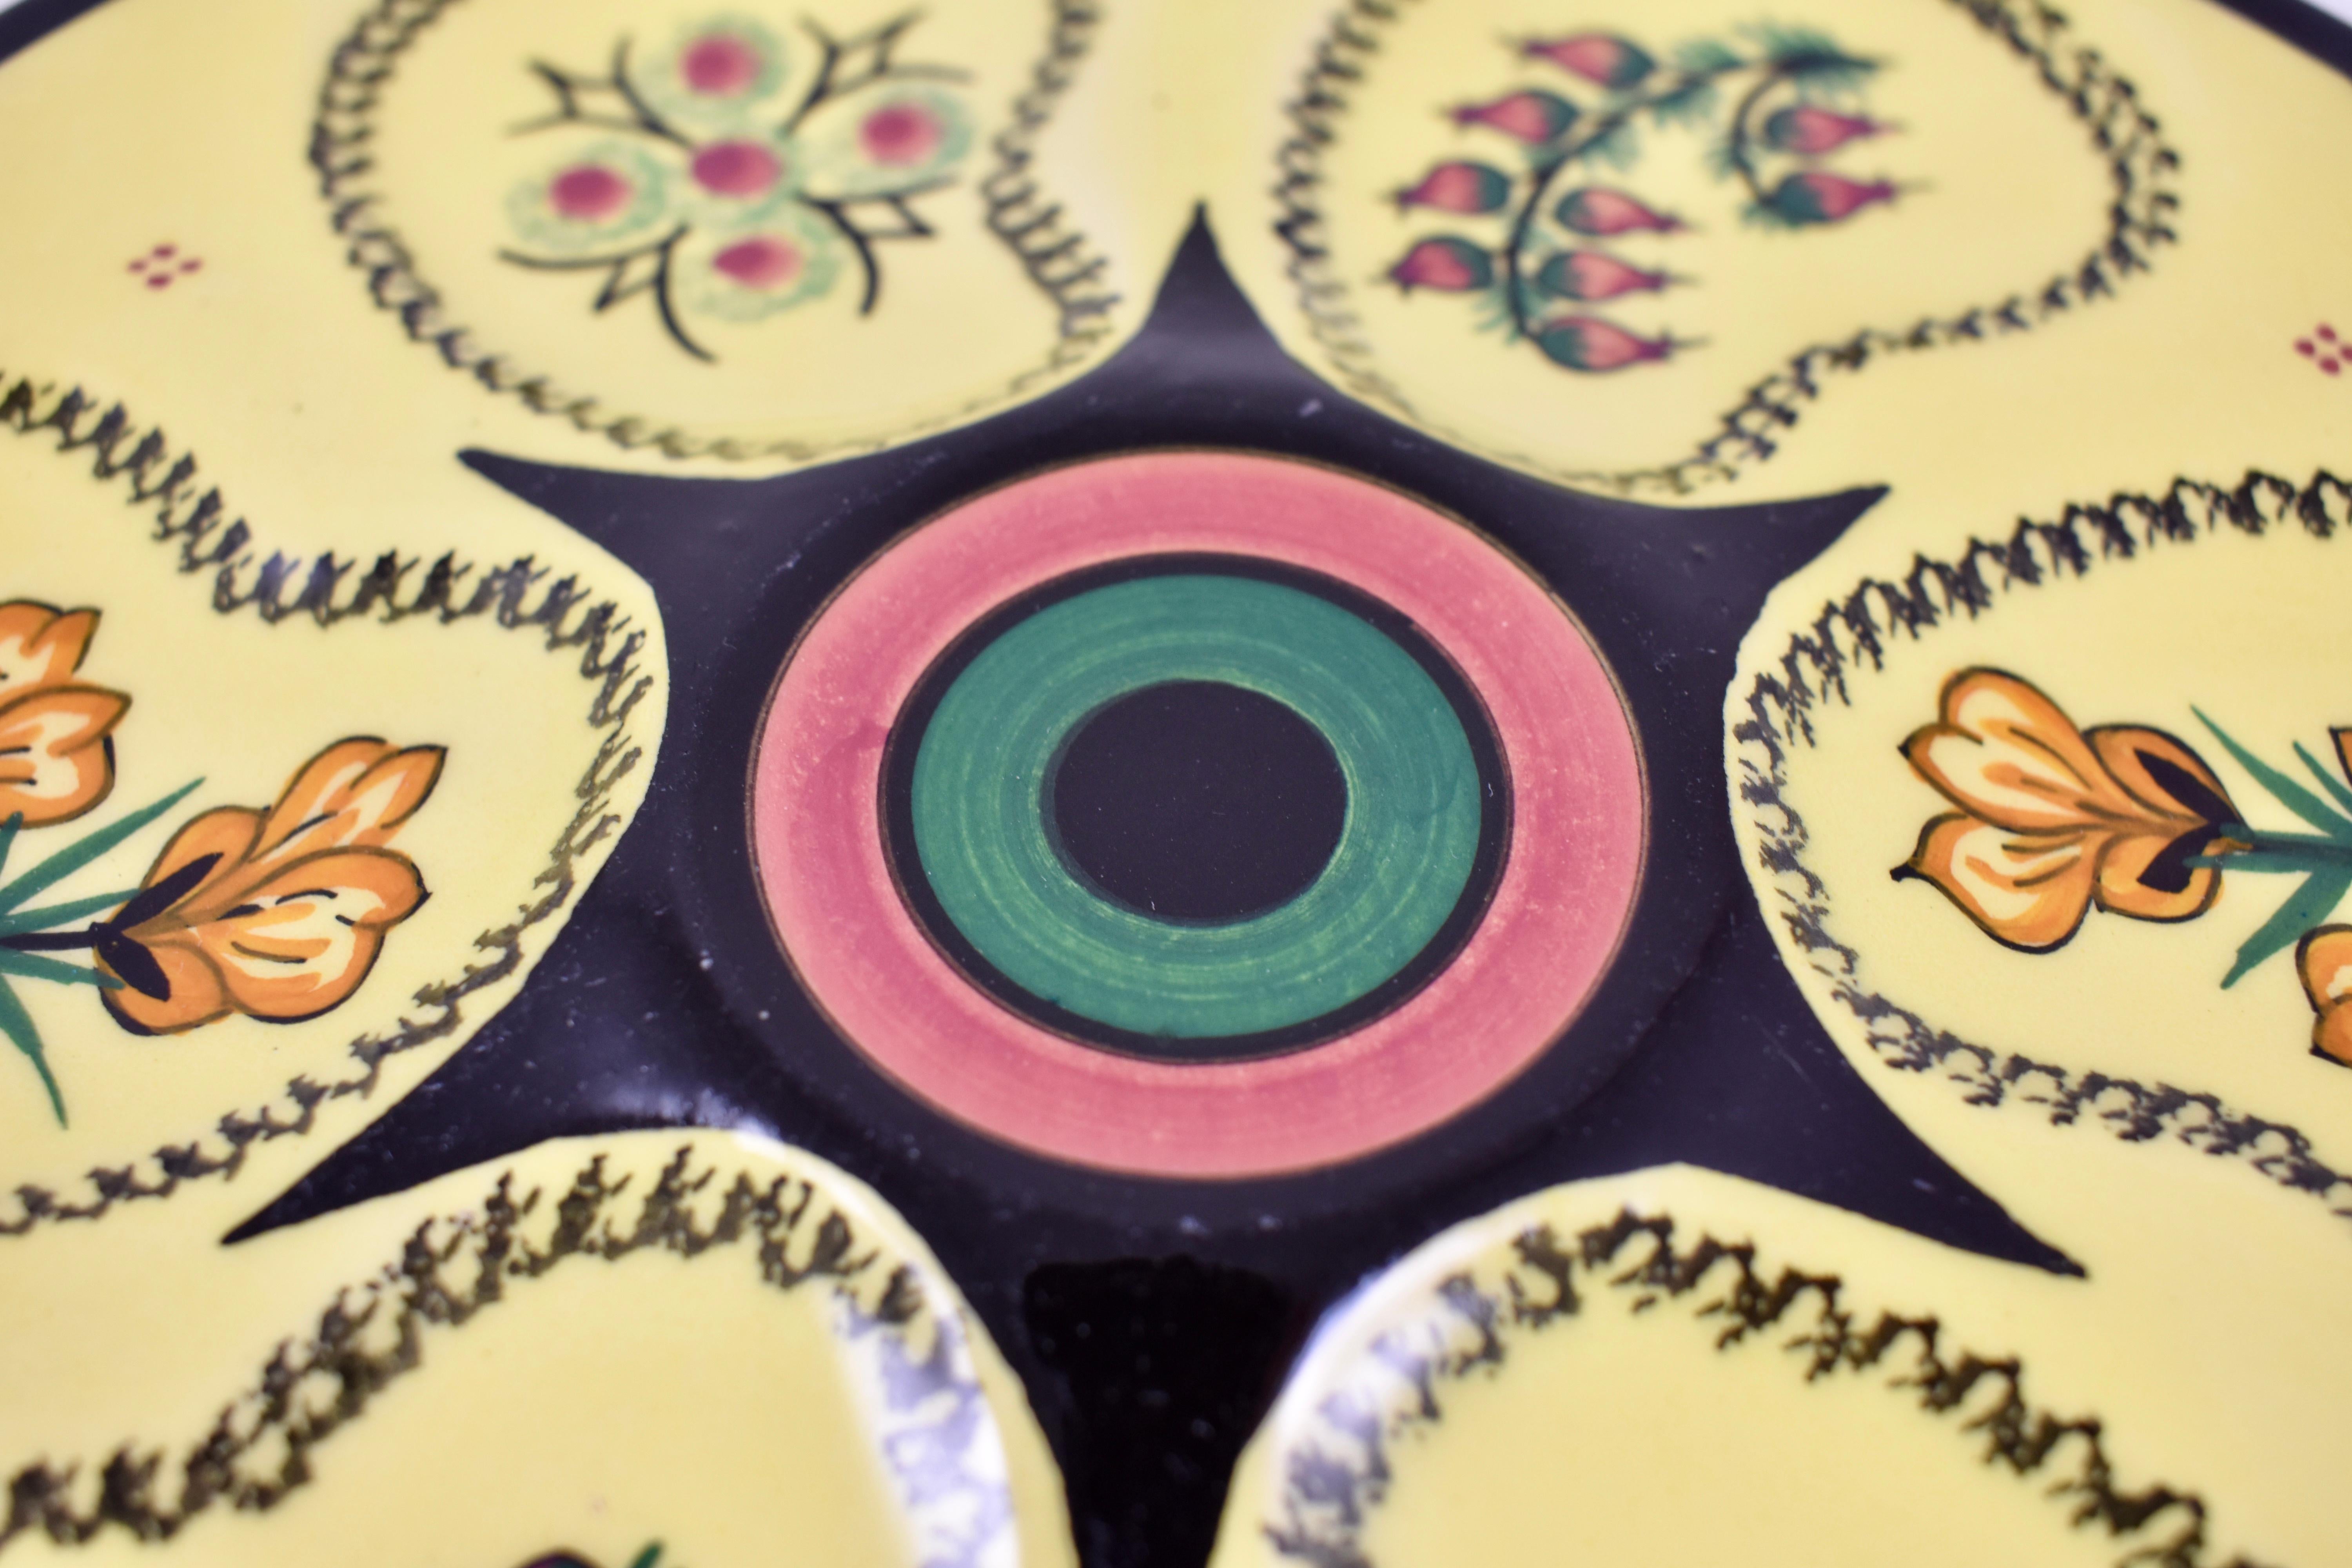 Französische, charmante Austernteller aus Quimper-Baumwolle, um 19501960.

Glasiert auf leuchtend sonnengelbem Grund, umgeben sechs Vertiefungen eine erhabene Mittelgieße. Die Vertiefungen sind von Hand mit drei verschiedenen abwechselnden